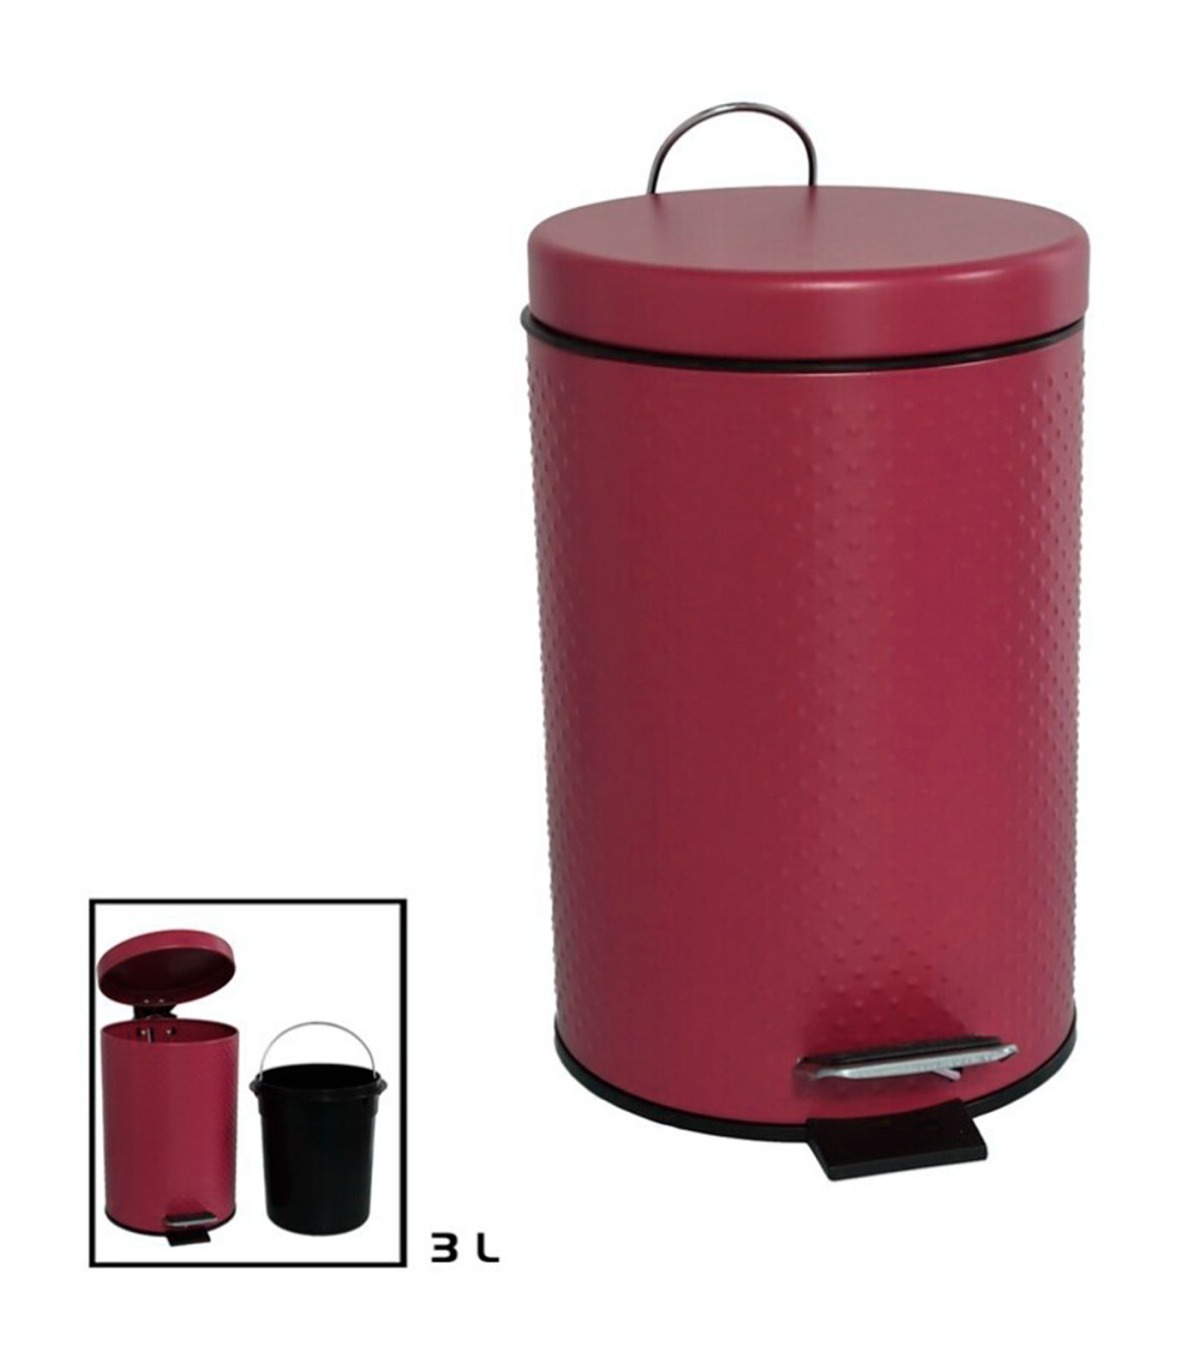 Tradineur - Cubo de basura de plástico con pedal y recipiente